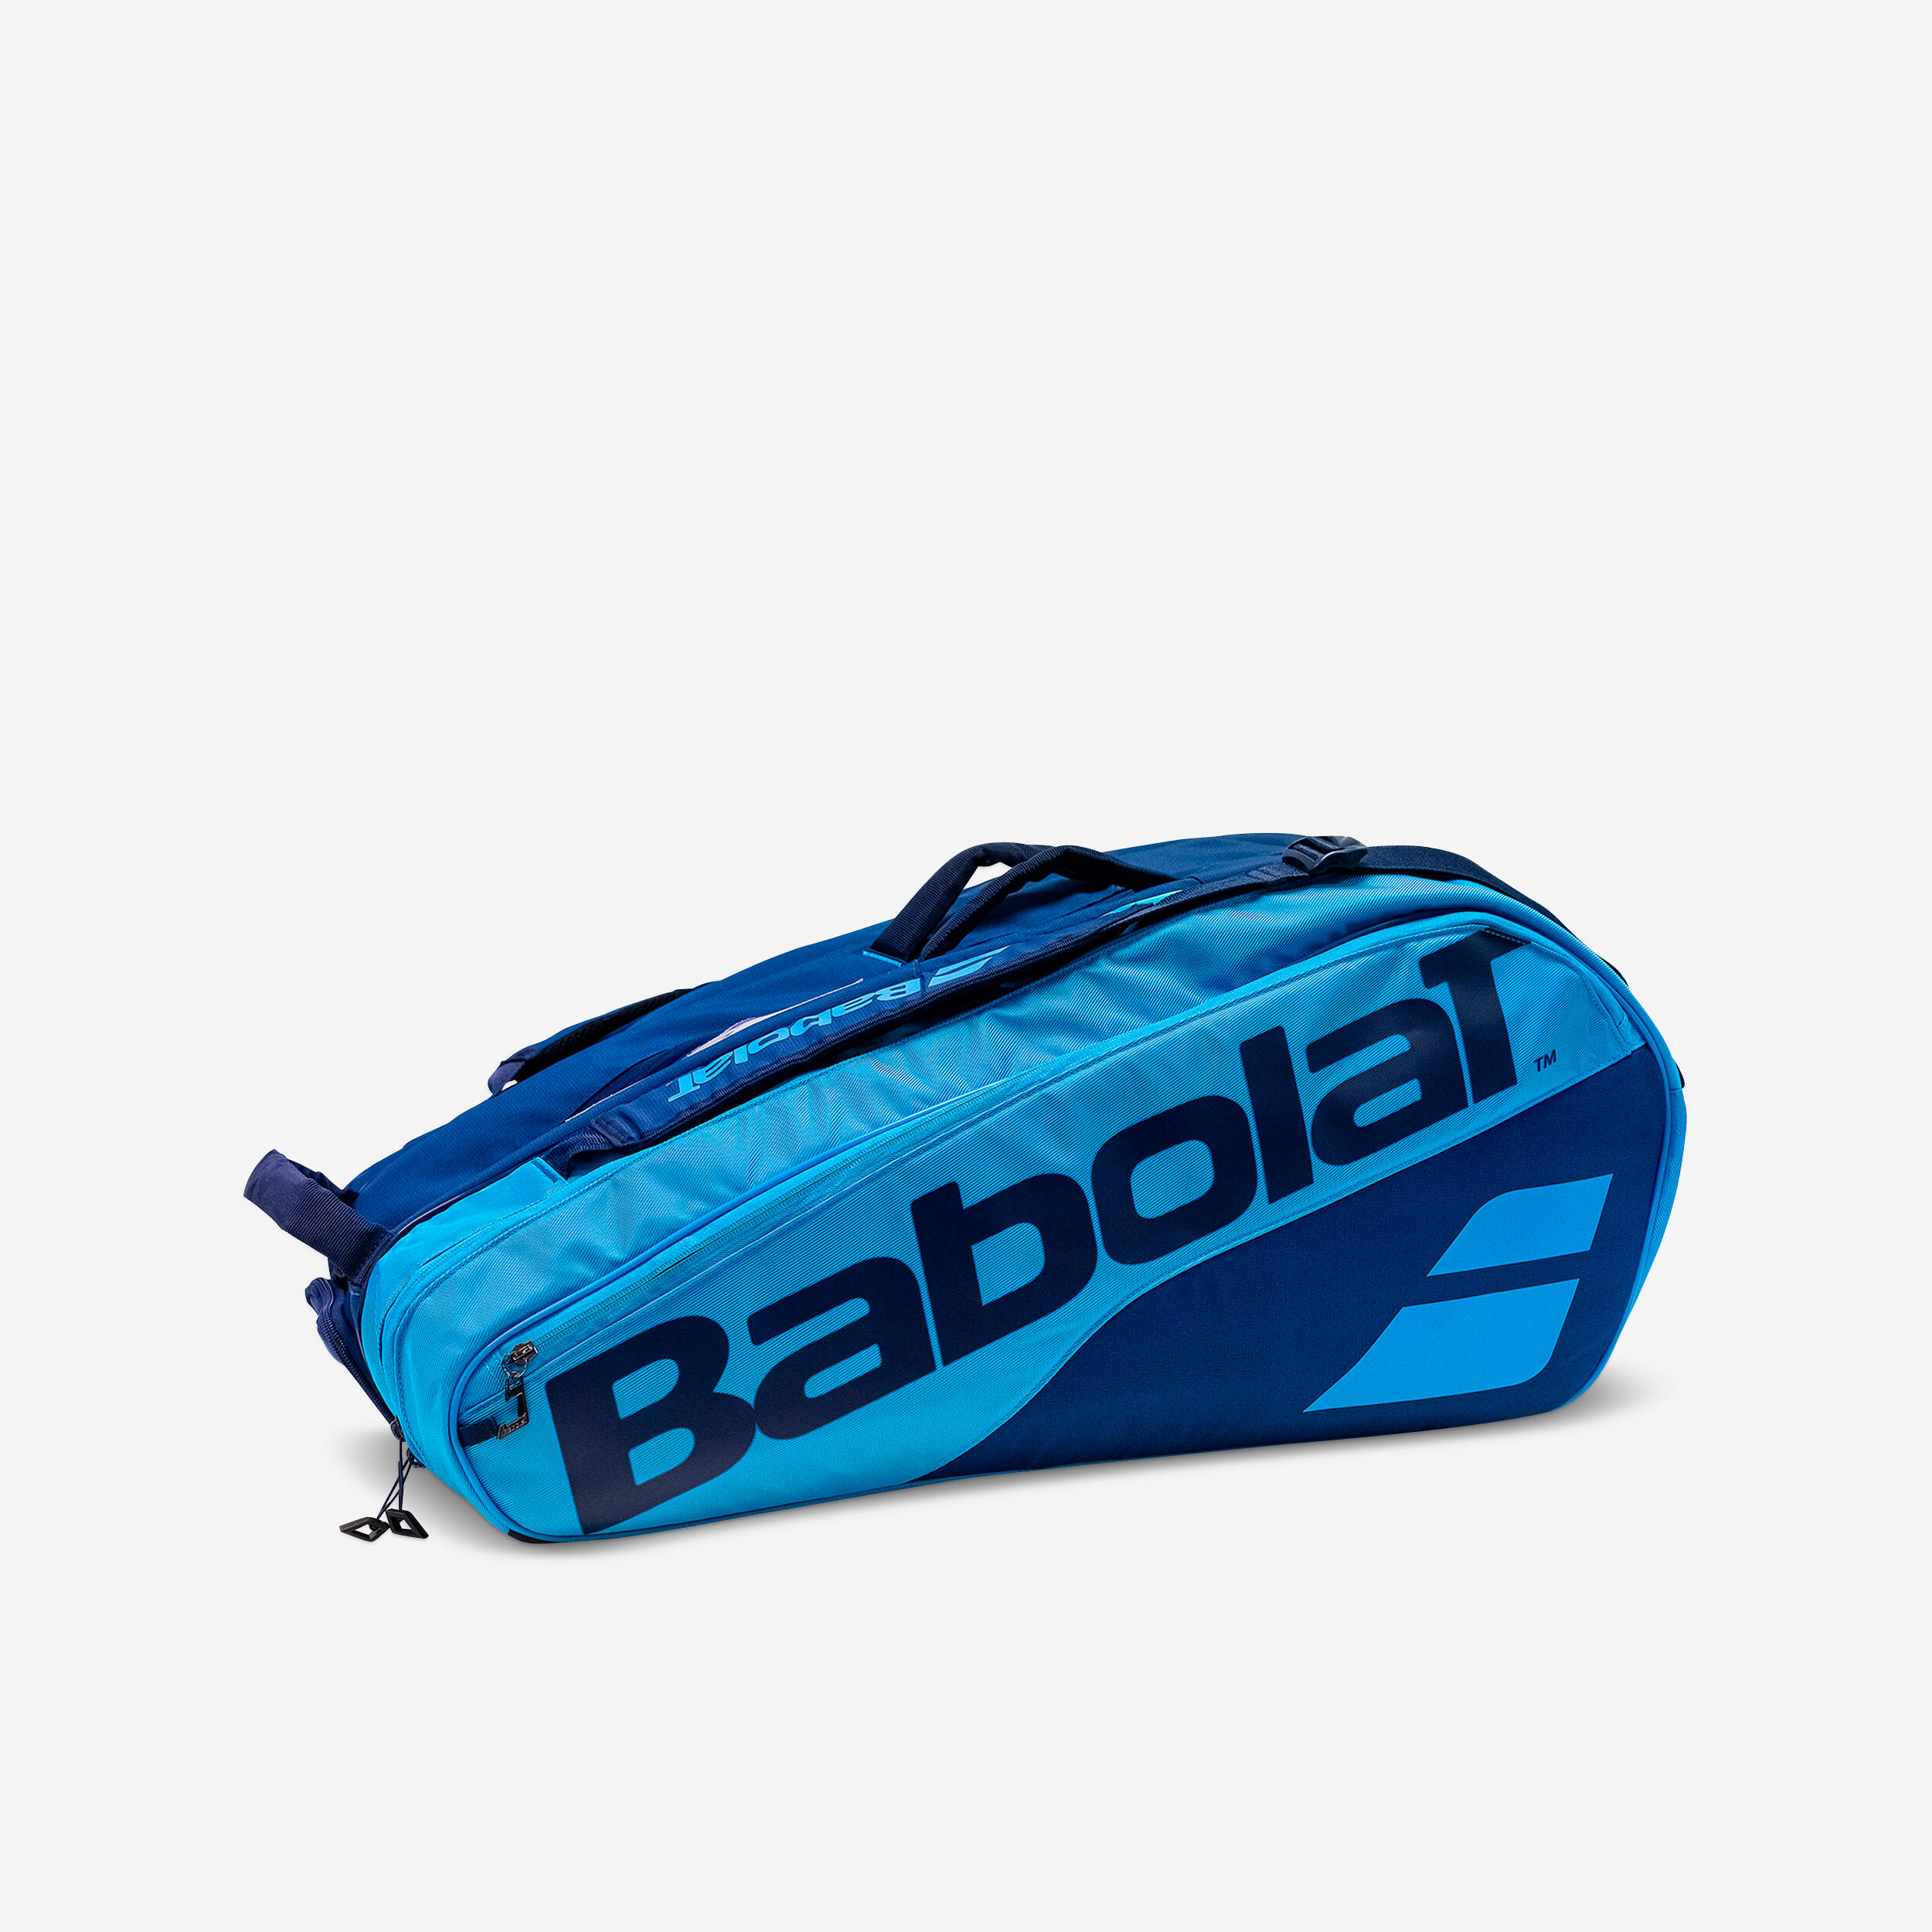 9R Tennis Bag Pure - Blue 1/7